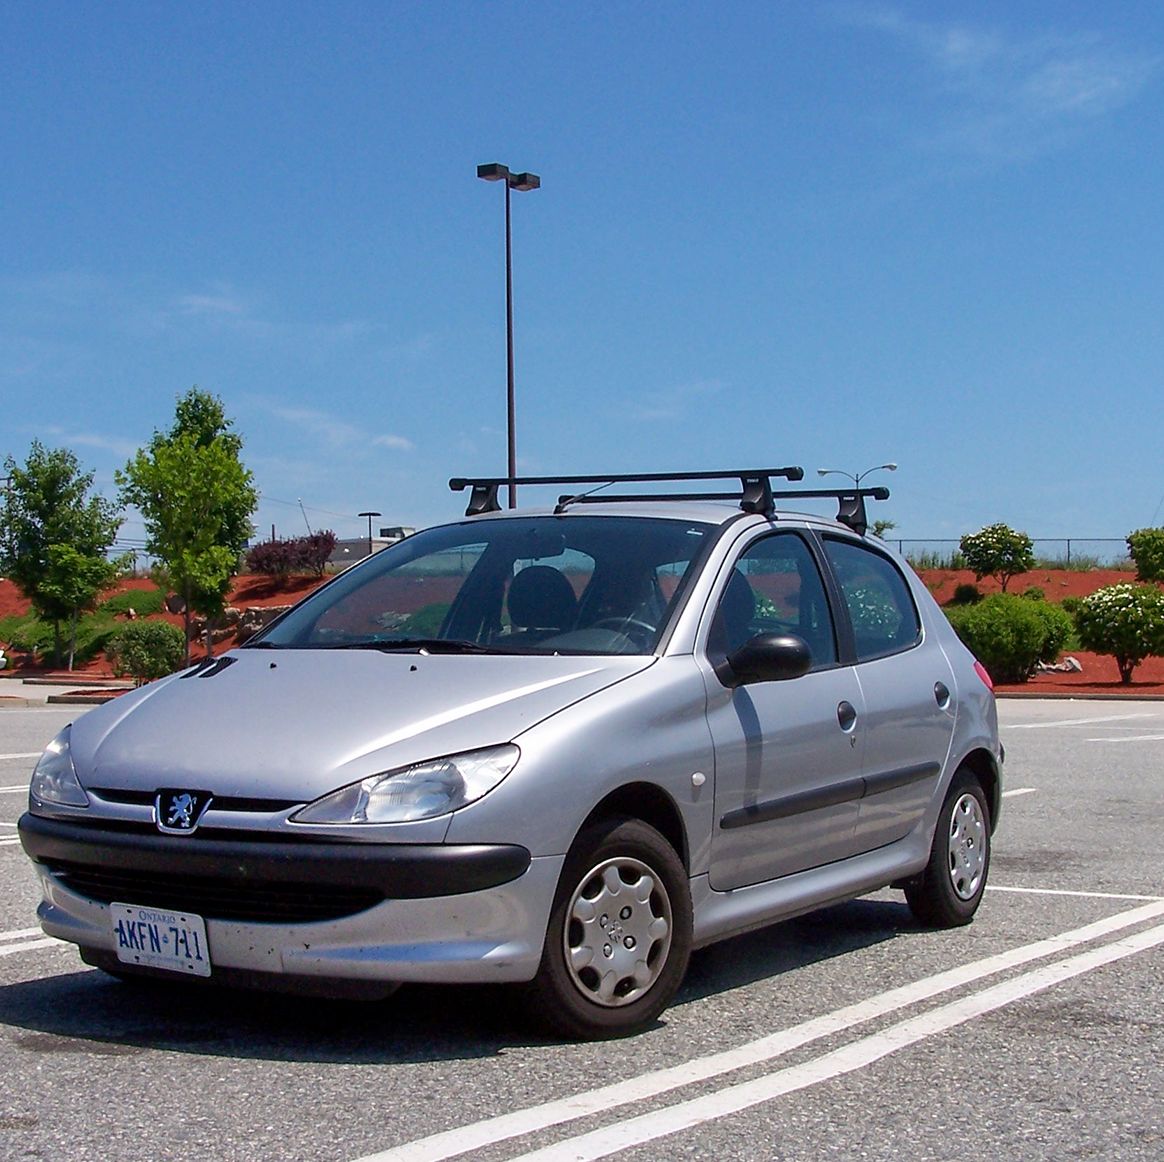 Hvad Gammel mand kontanter Street-Spotted: Peugeot 206